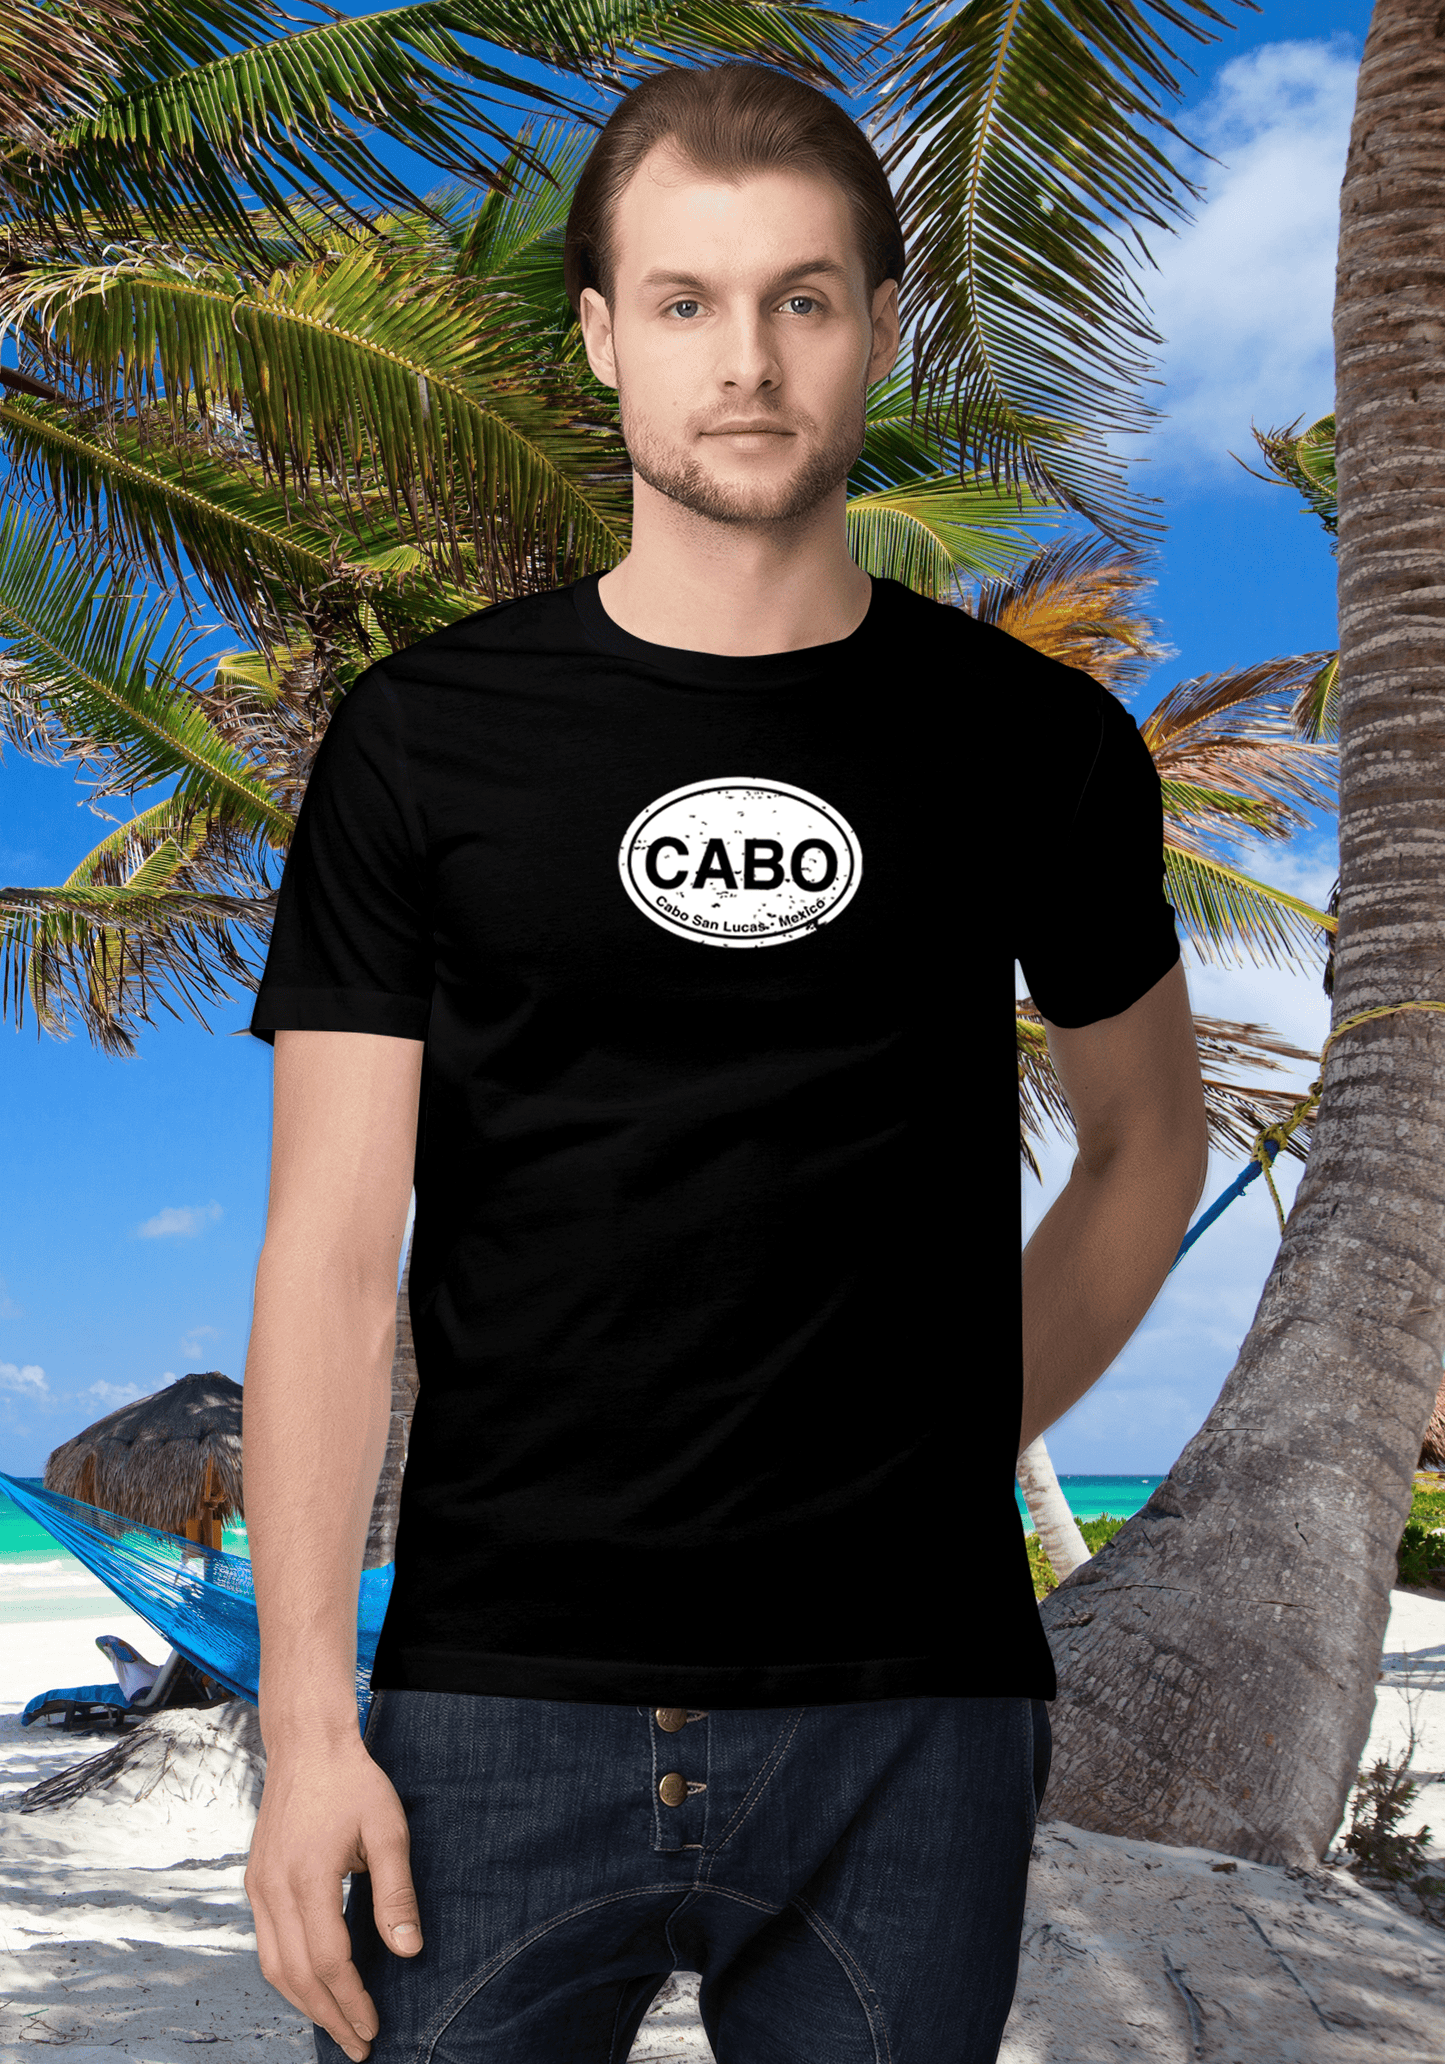 Cabo Men's Classic T-Shirt Souvenirs - My Destination Location